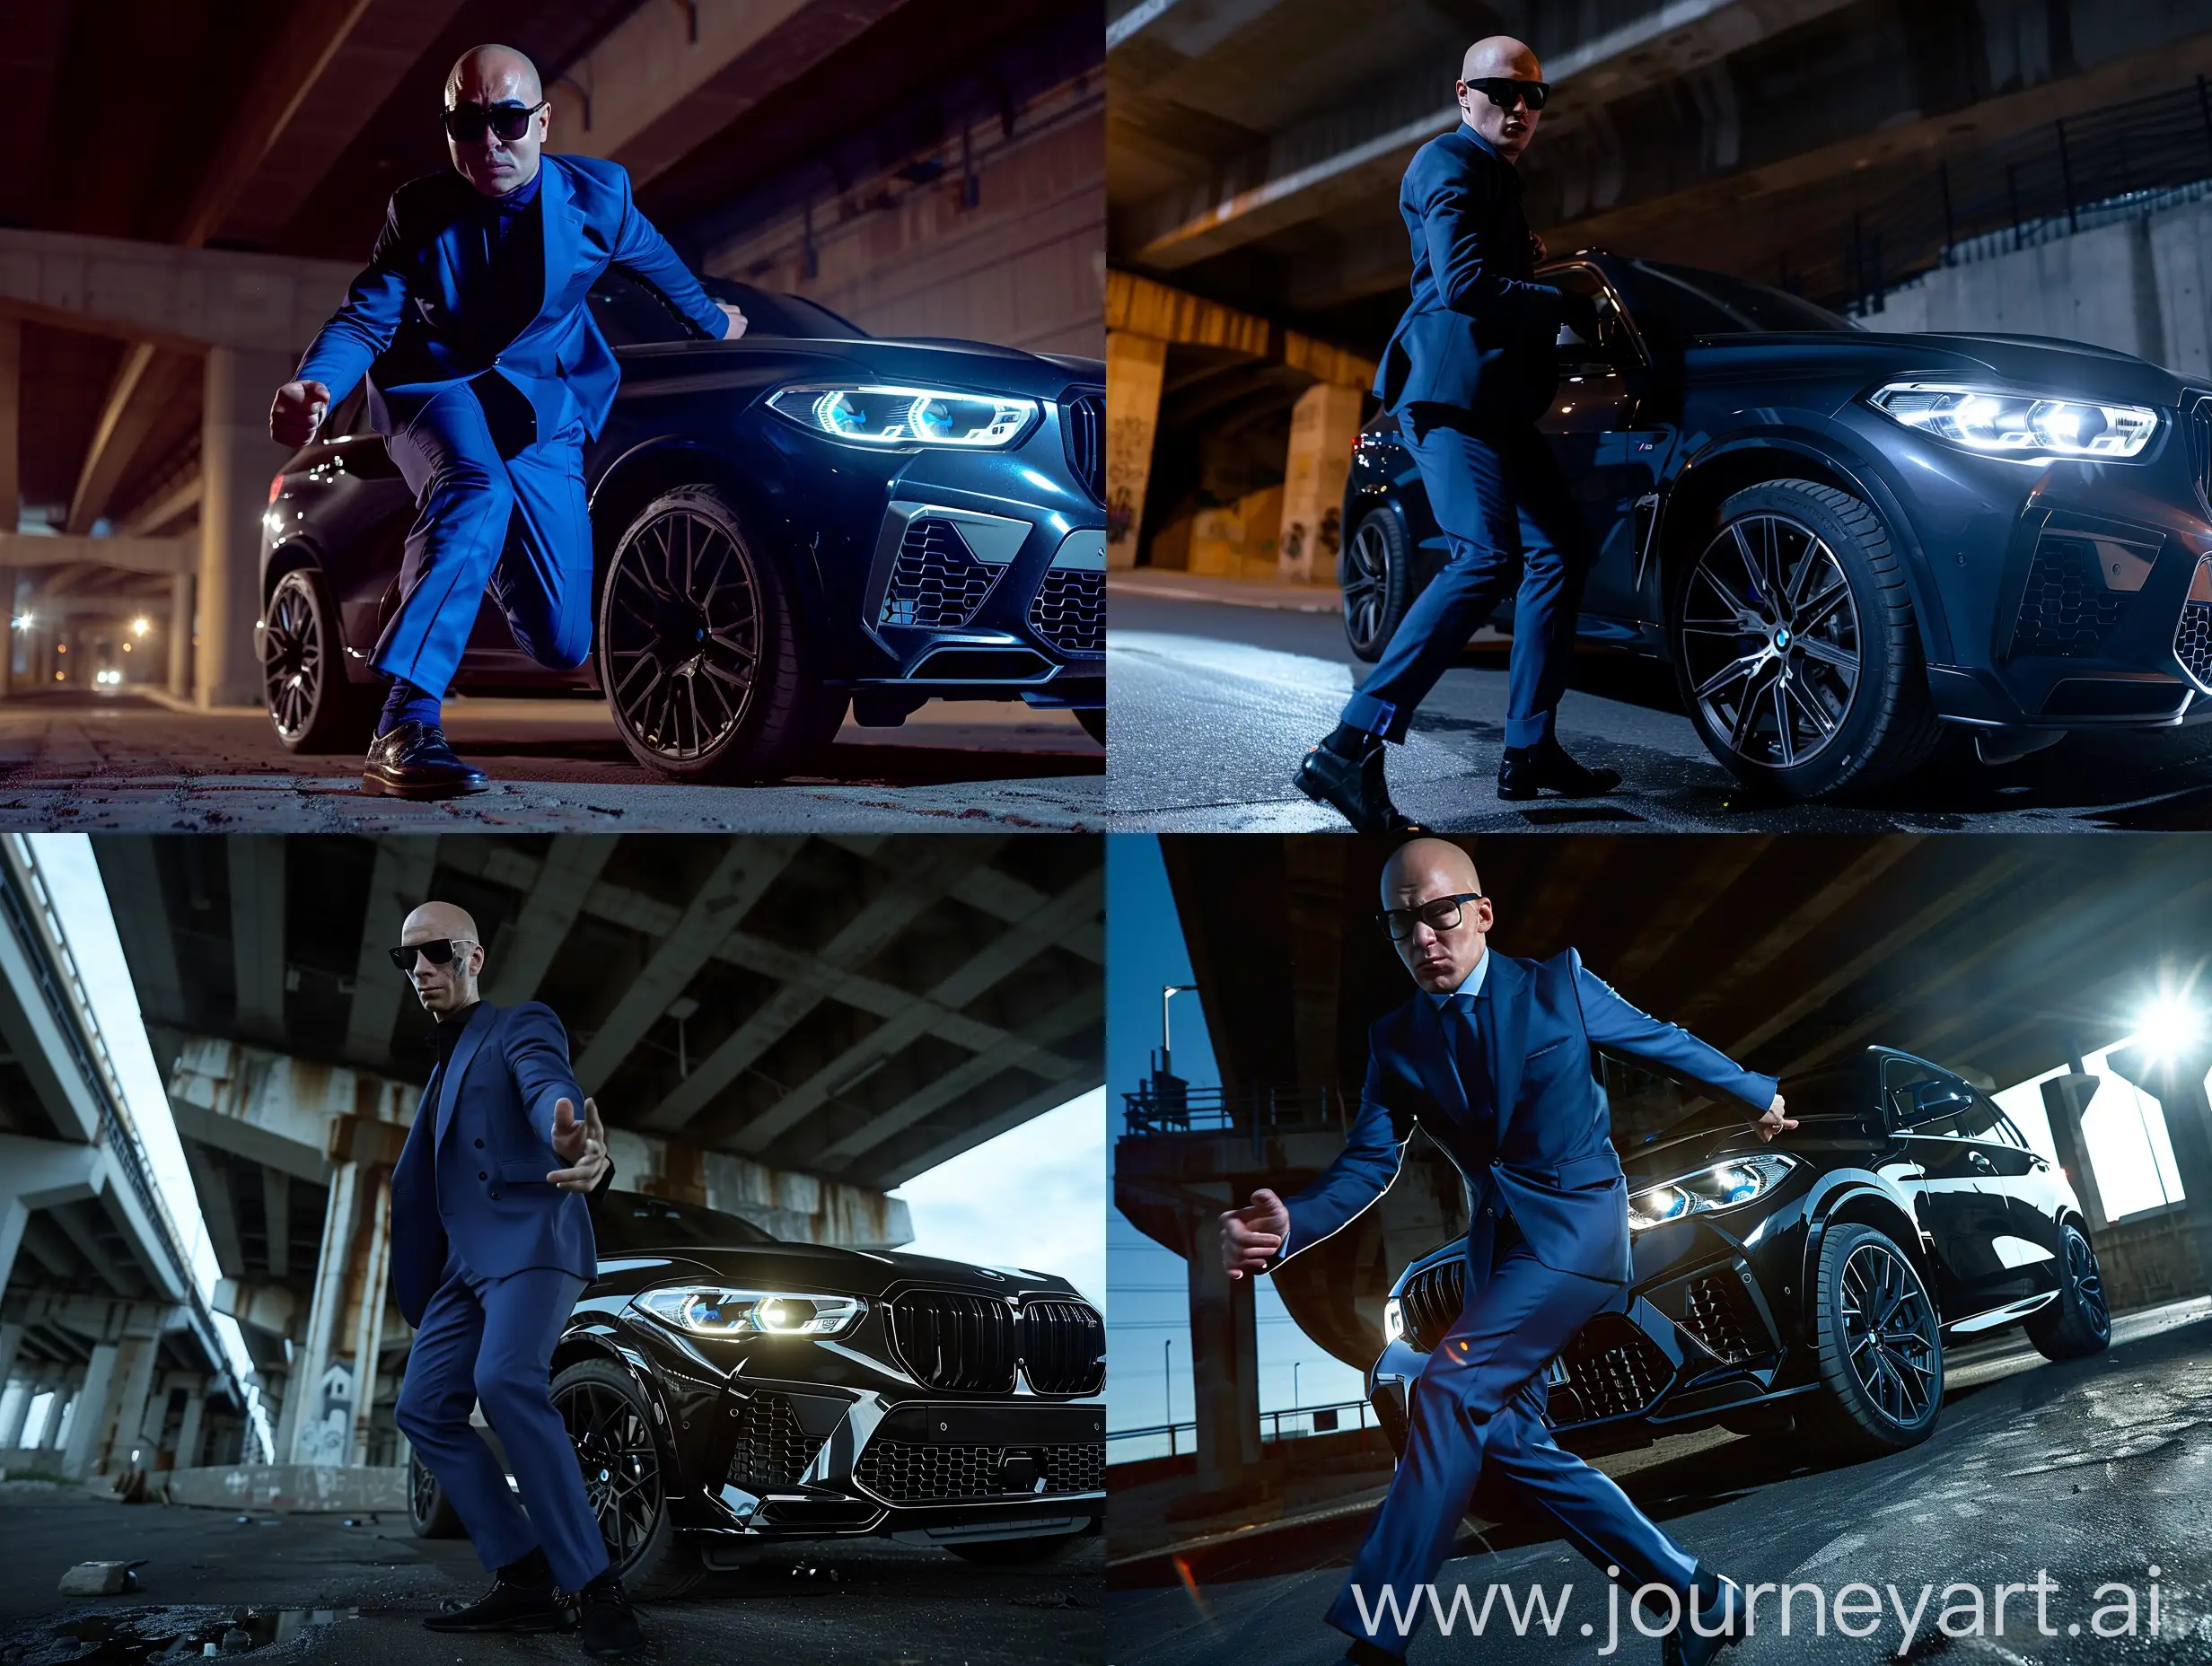 Молодой лысый мужчина, тёмные очки, синий костюм, туфли, танцует, вечер, чёрный BMW x5m,свет фар, действие происходит под мостом, реализм